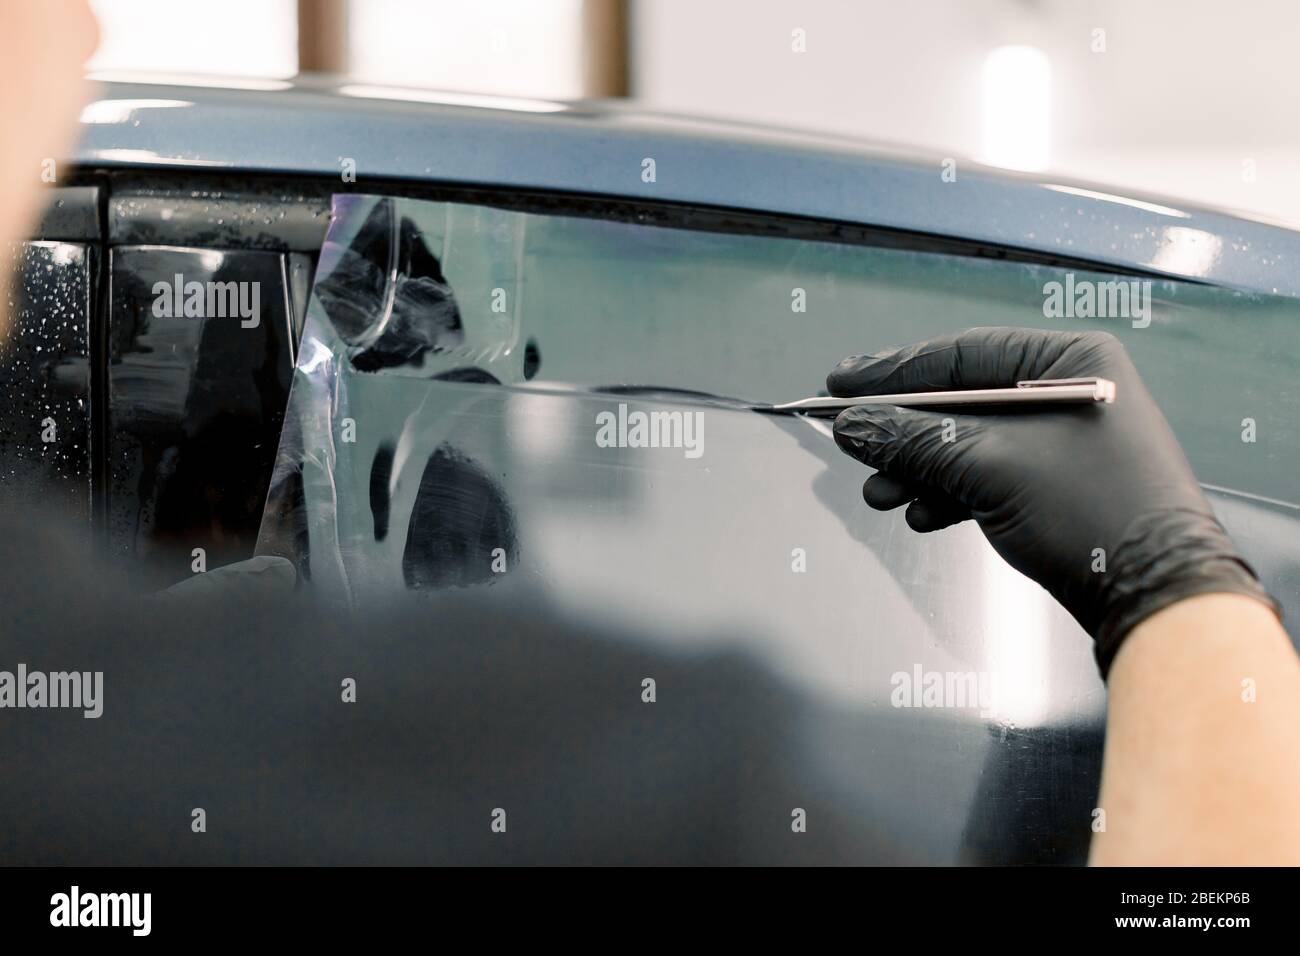 Zugeschnittenes Bild von Händen des Arbeiters in der Garage, die ein Autofenster mit getönter Folie oder Folie färben, die spezielle Klinge oder Messer halten, um den Film zu schneiden. Auto Stockfoto